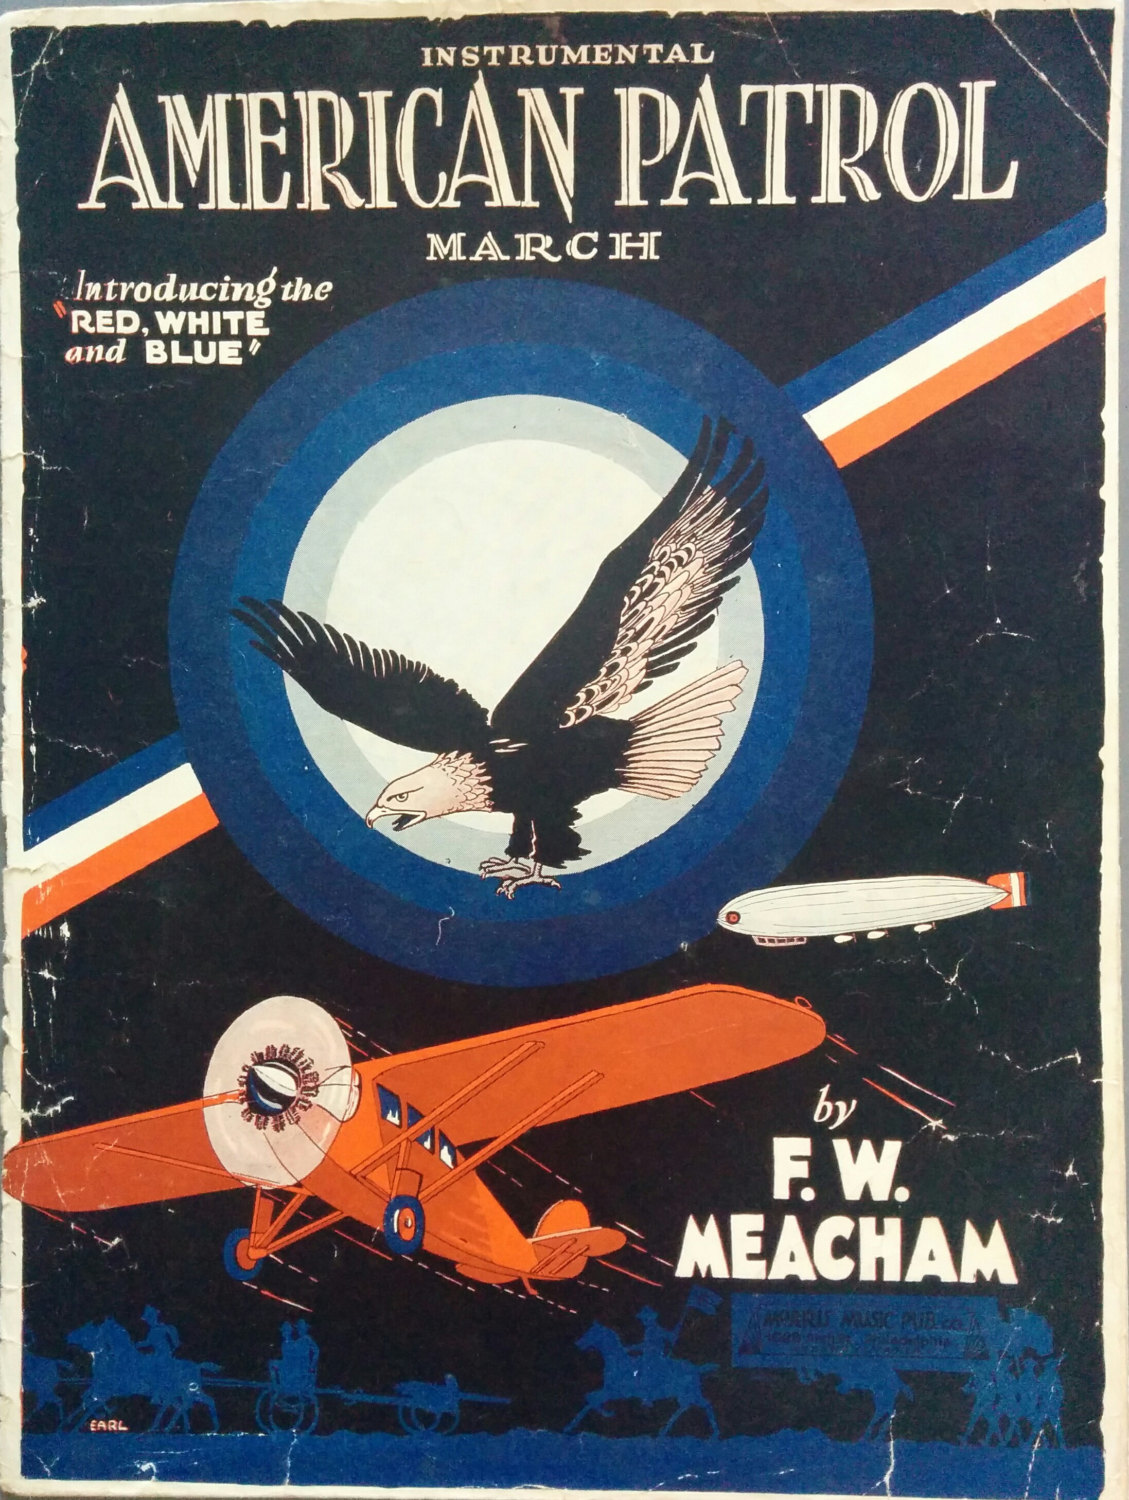 American Patrol – F. W. Meacham